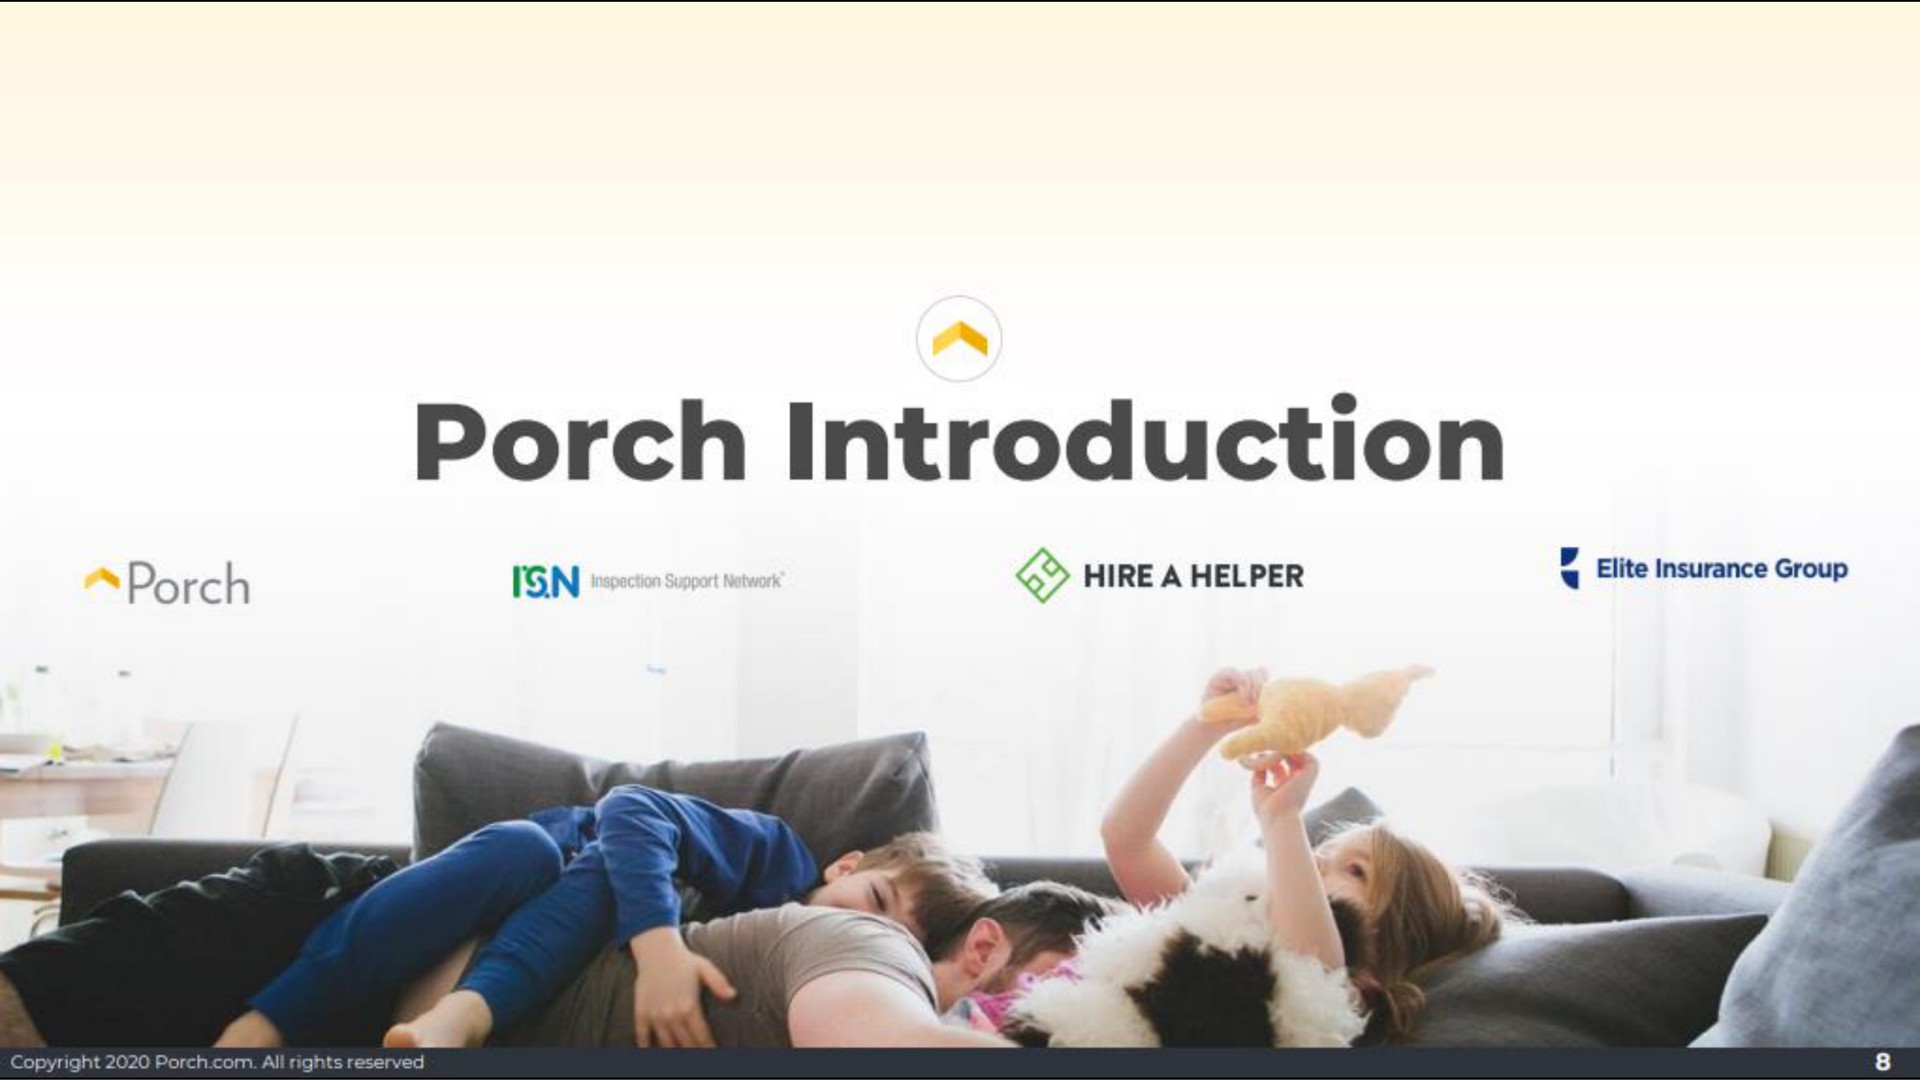 porch introduction porch hire a helper elite insurance group | Porch